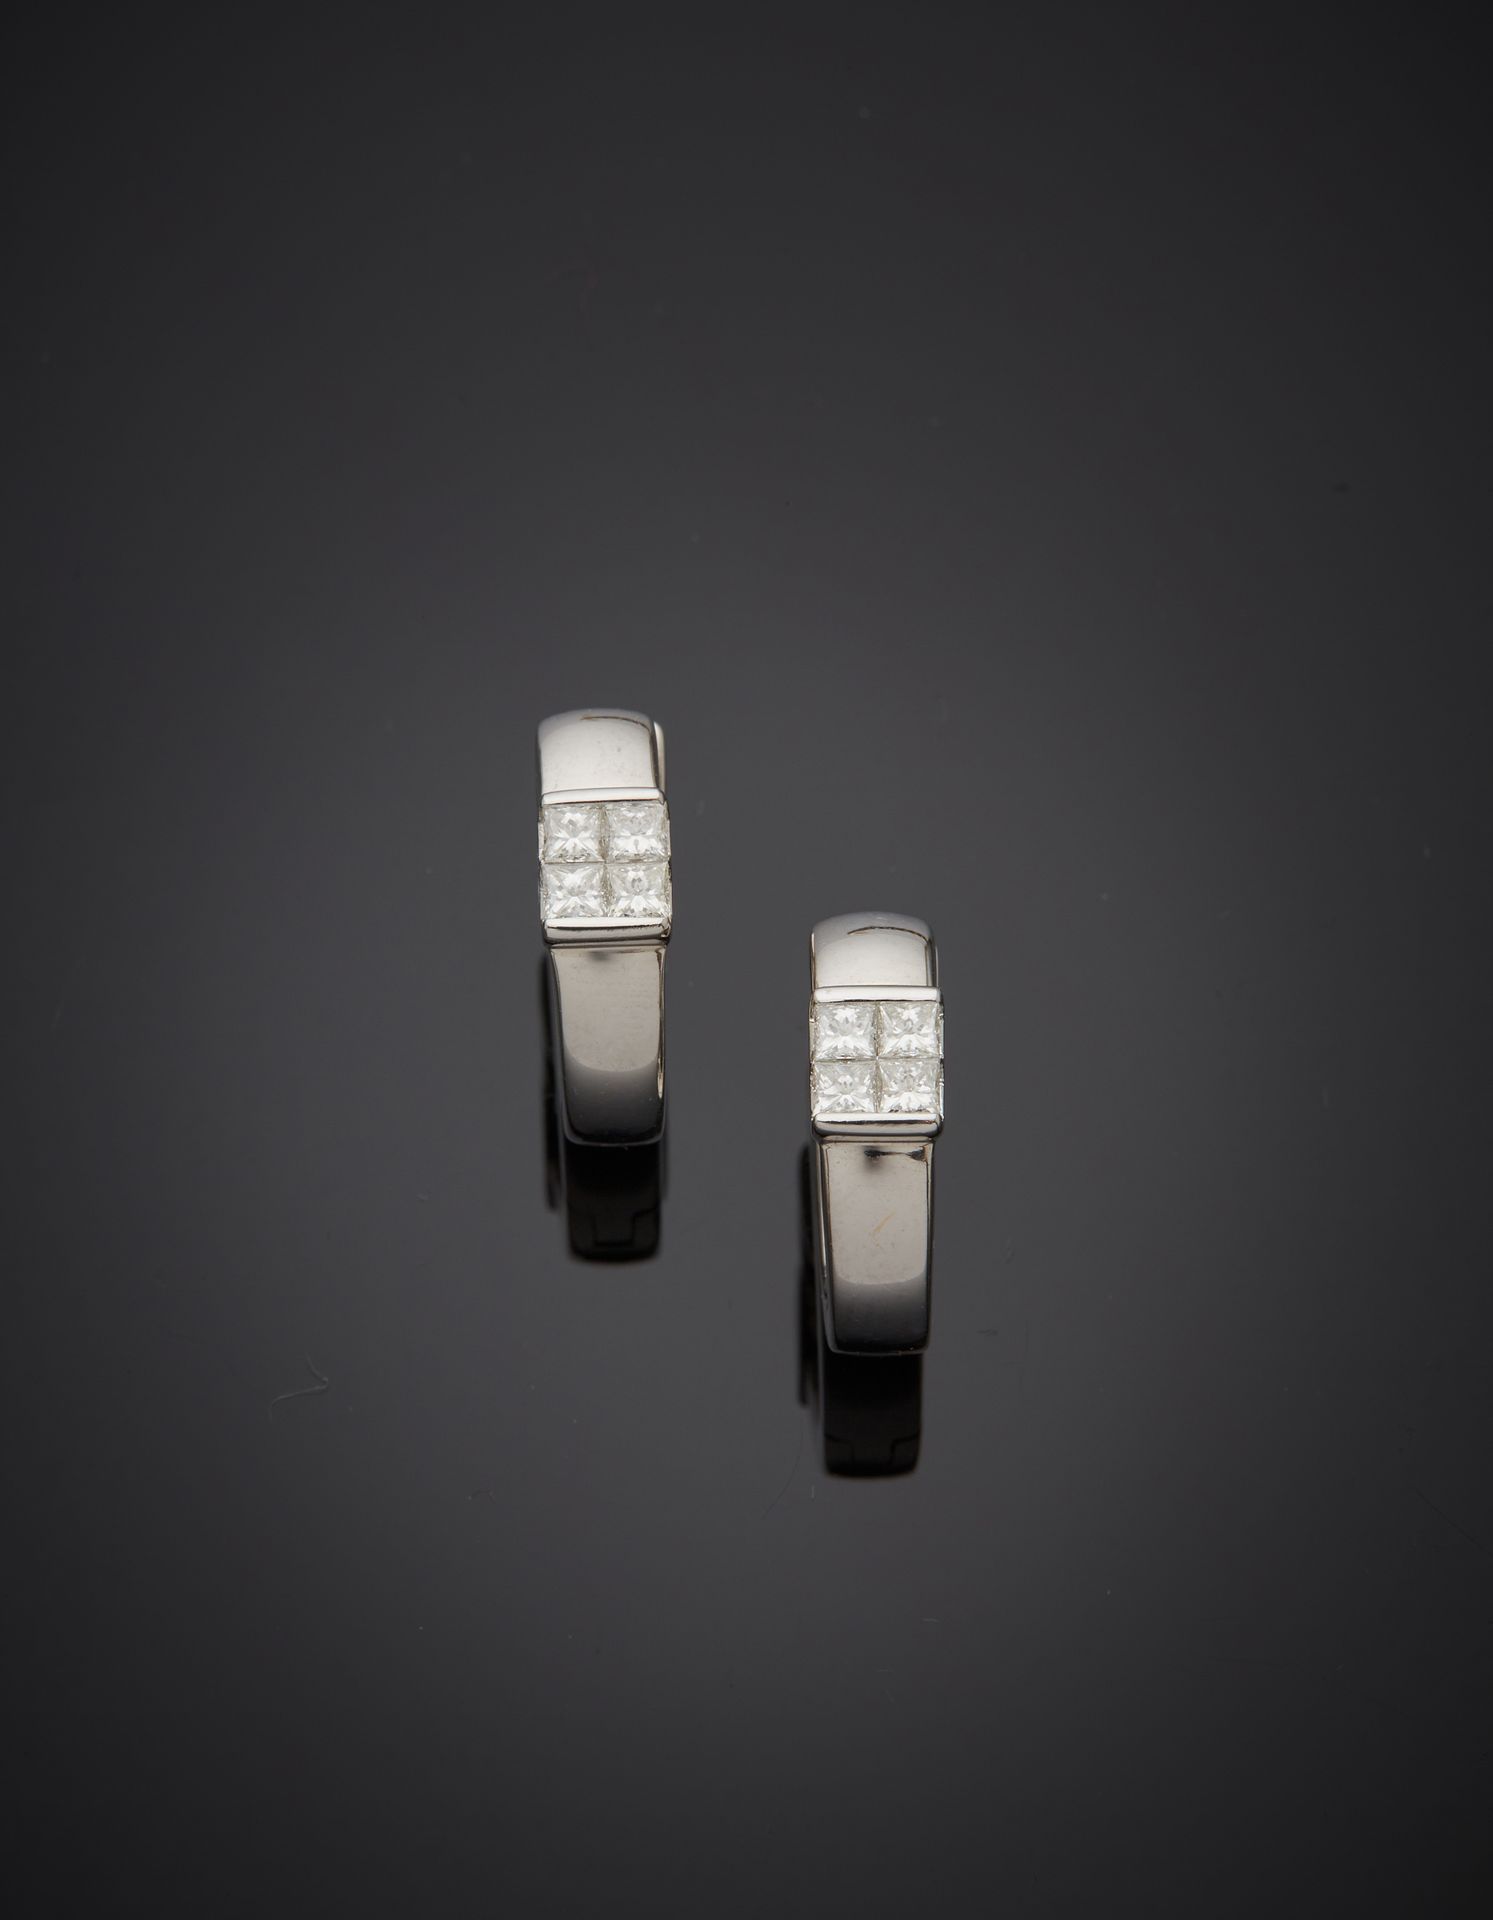 Null 一对白金（750‰）"克里奥尔 "耳环，每只耳环都镶嵌有四颗公主式切割的钻石，形成一个方形。 
长度：1.5厘米。宽度：0.4厘米。毛重：6克。